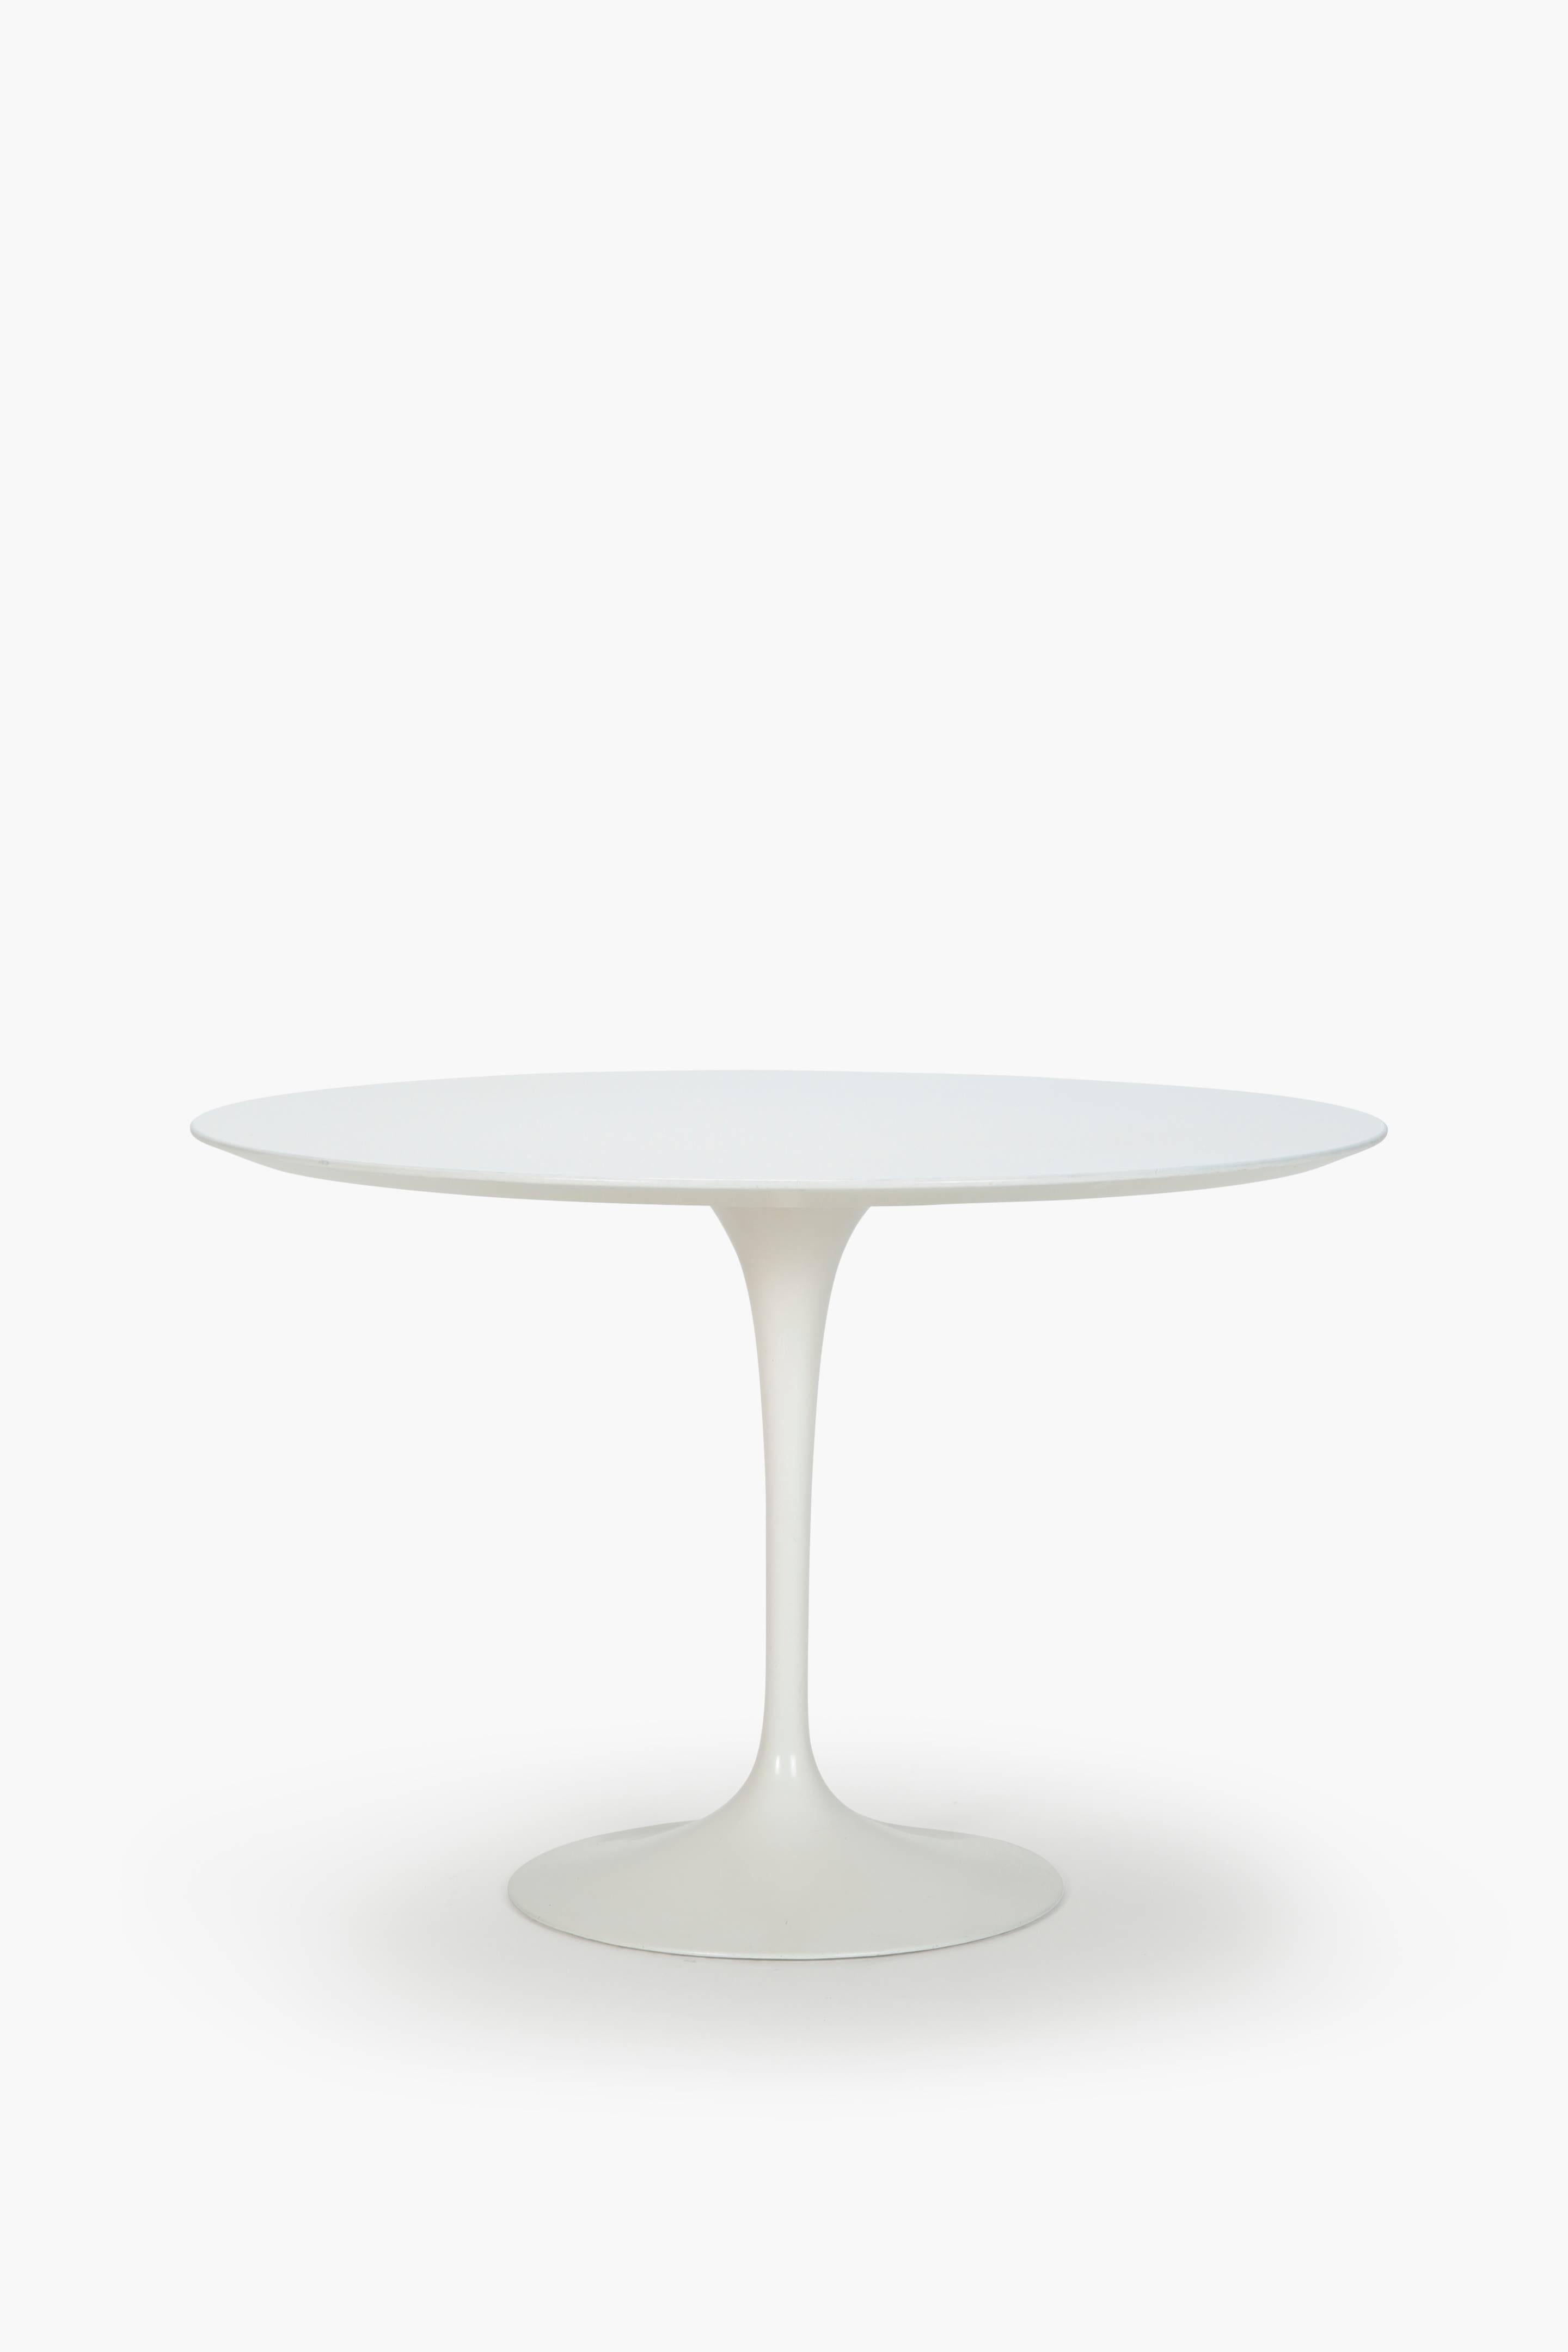 Eero Saarinen Dining Table Set Knoll, 1960s 1